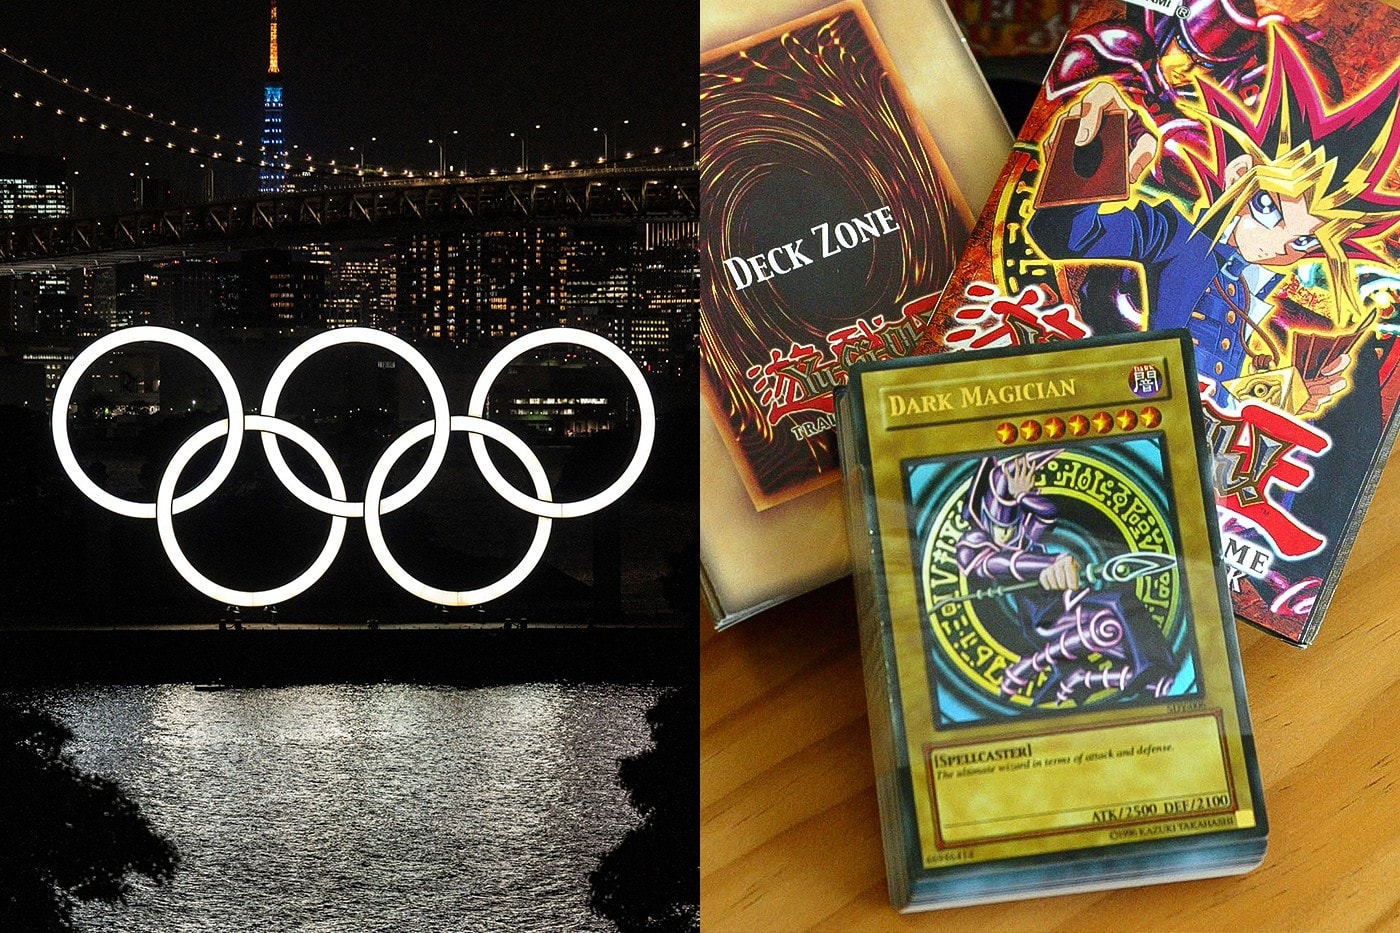 '유희왕'을 올림픽 종목으로 채택해야 한다는 청원이 등장했다, 유희왕 오피셜 카드게임, 푸른 눈의 백룡, 도쿄 올림픽, 블랙 매지션, 유우기, 듀얼, 드로우